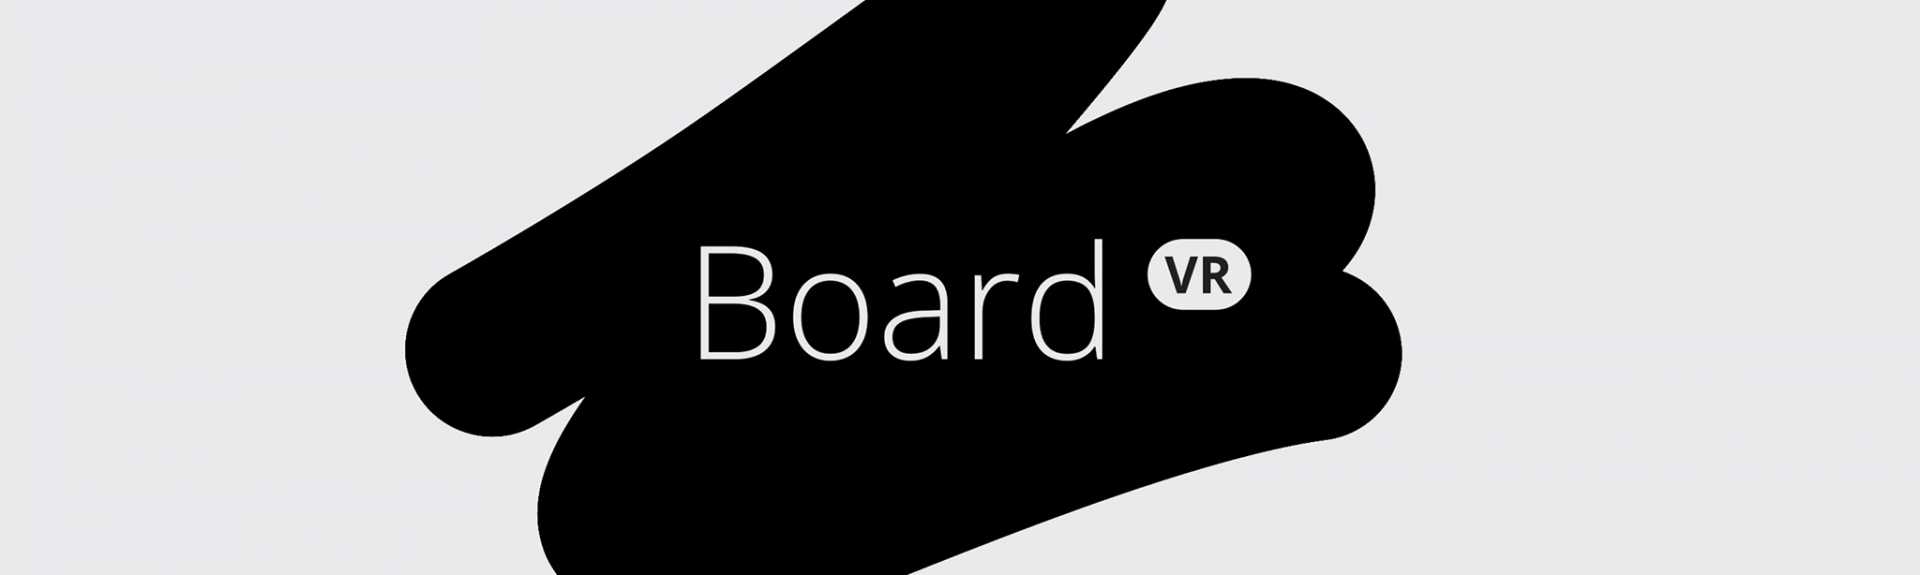 Board VR